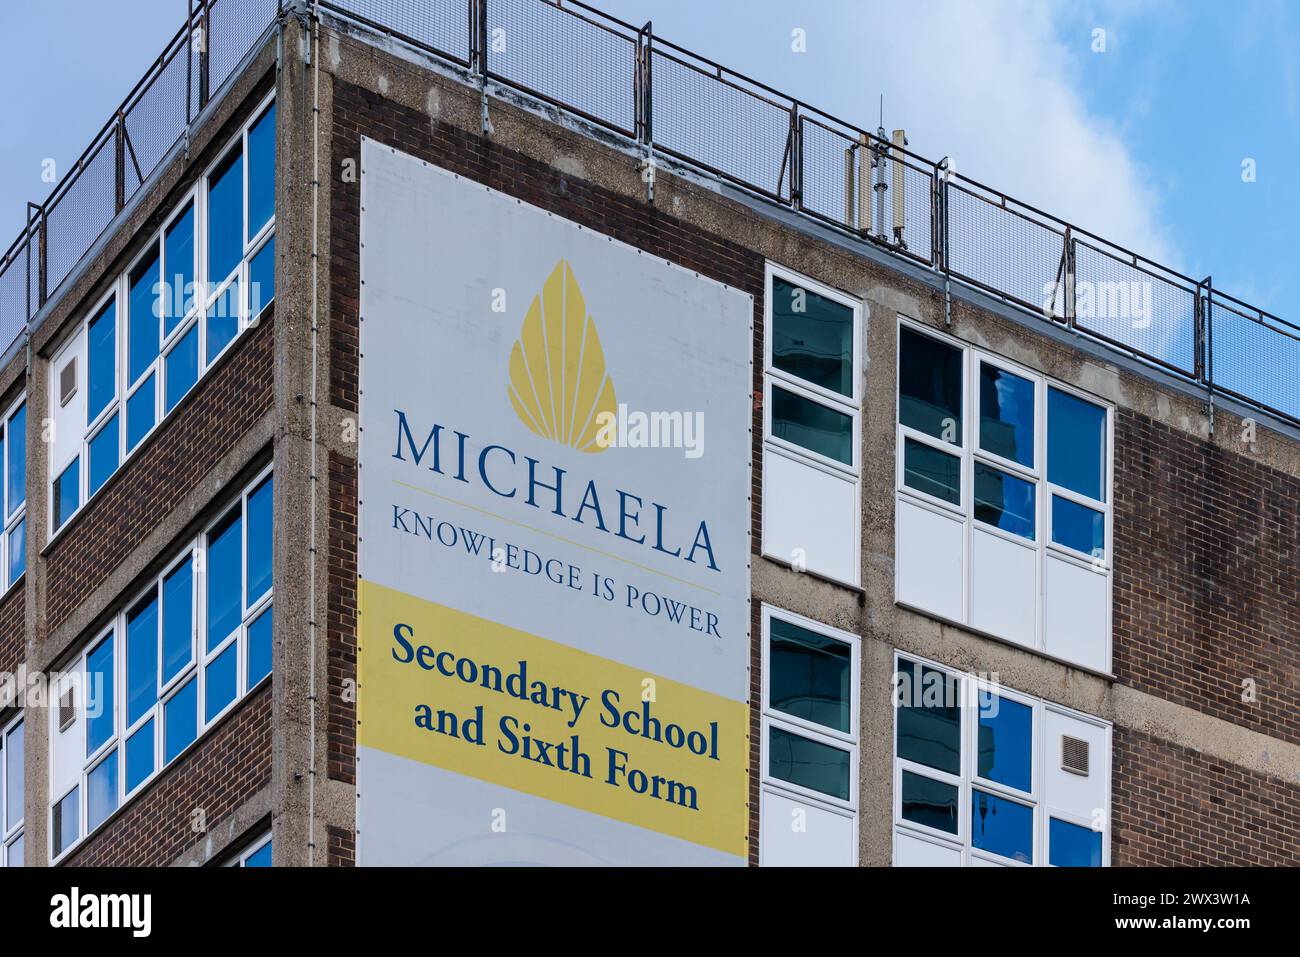 Escuela Comunitaria Michaela, Wembley, Brent, Reino Unido. Fotos exteriores de la Escuela Comunitaria Michaela. Foto de Amanda Rose/Alamy Foto de stock